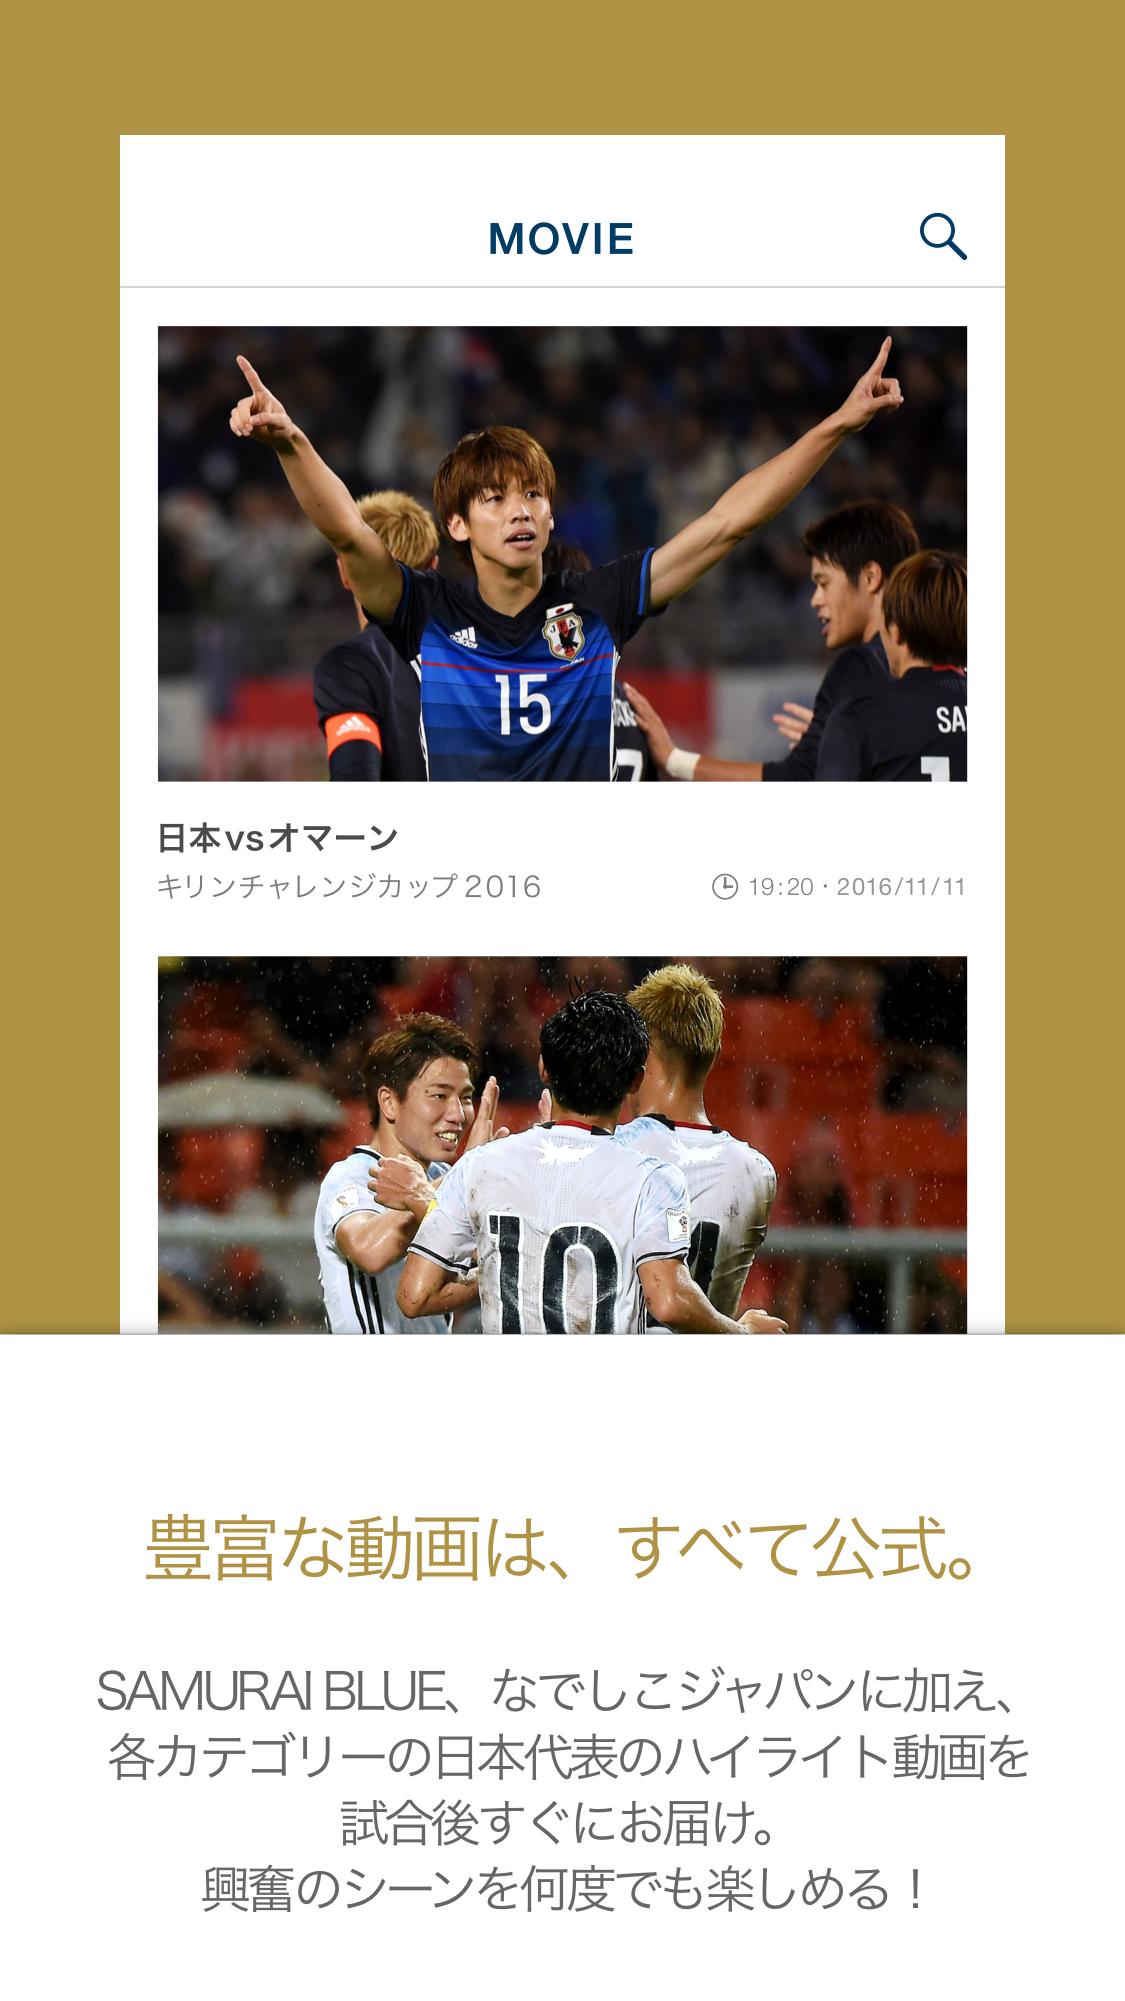 サッカー動画 サッカーニュース速報が見れるサッカー情報アプリ Legends Stadium Cho Android Tải Về Apk